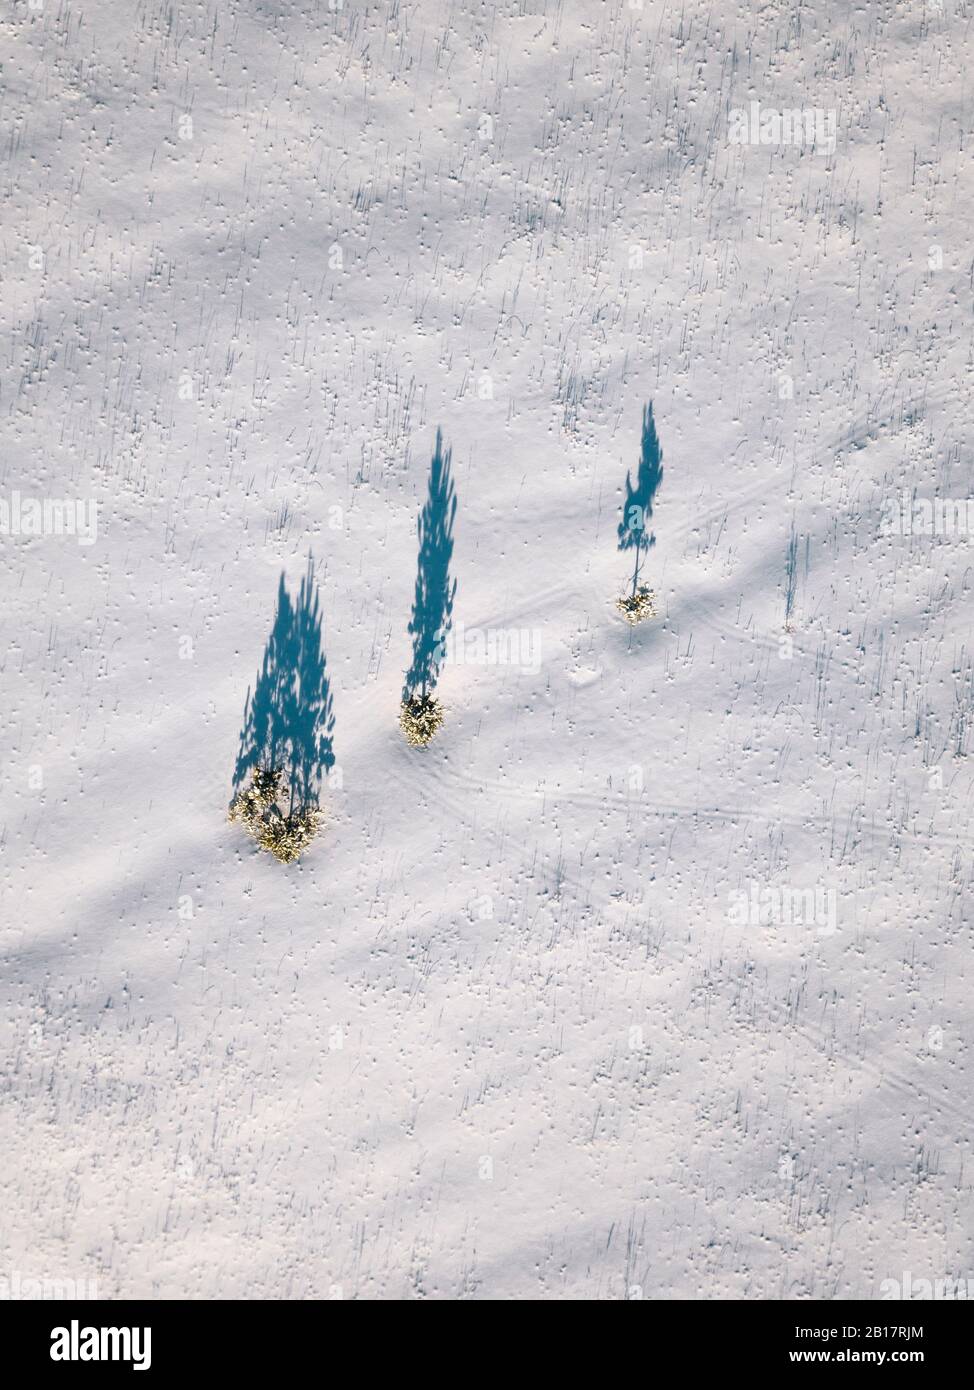 Russia, Oblast di Leningrado, Tikhvin, veduta aerea di un mucchio di alberi che gettano ombre su un terreno coperto di neve Foto Stock